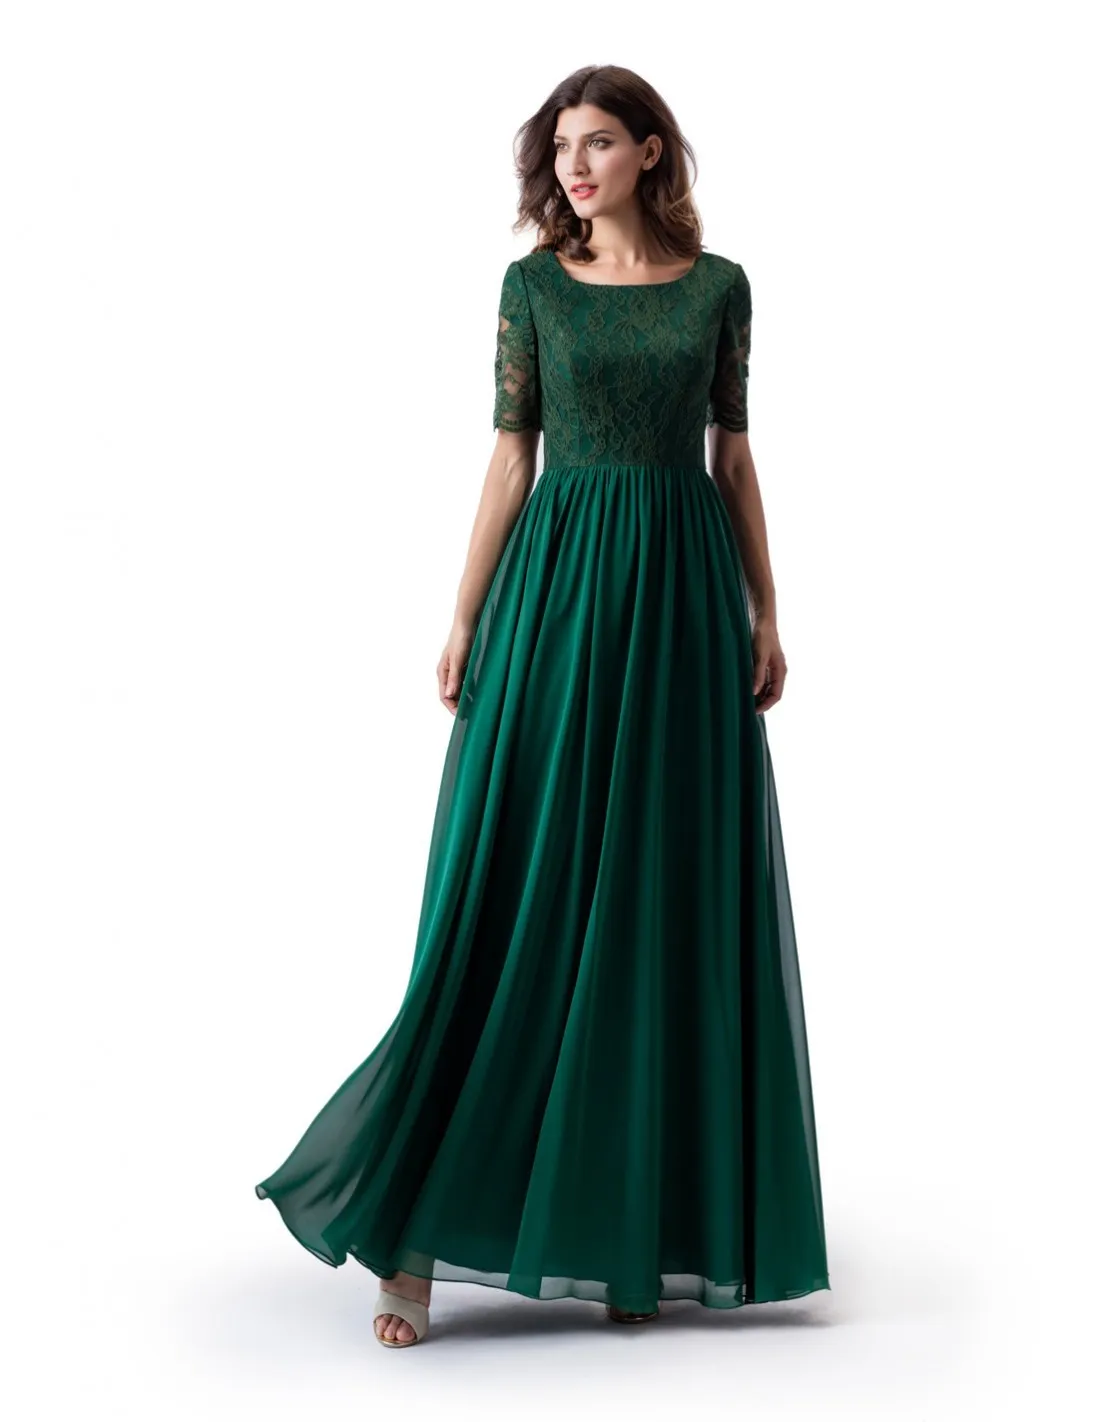 Verde escuro a linha longo modesto vestido de baile com mangas meia rendas topo chiffon saia do assoalho womrn formal vestido de noite qua vestido de festa